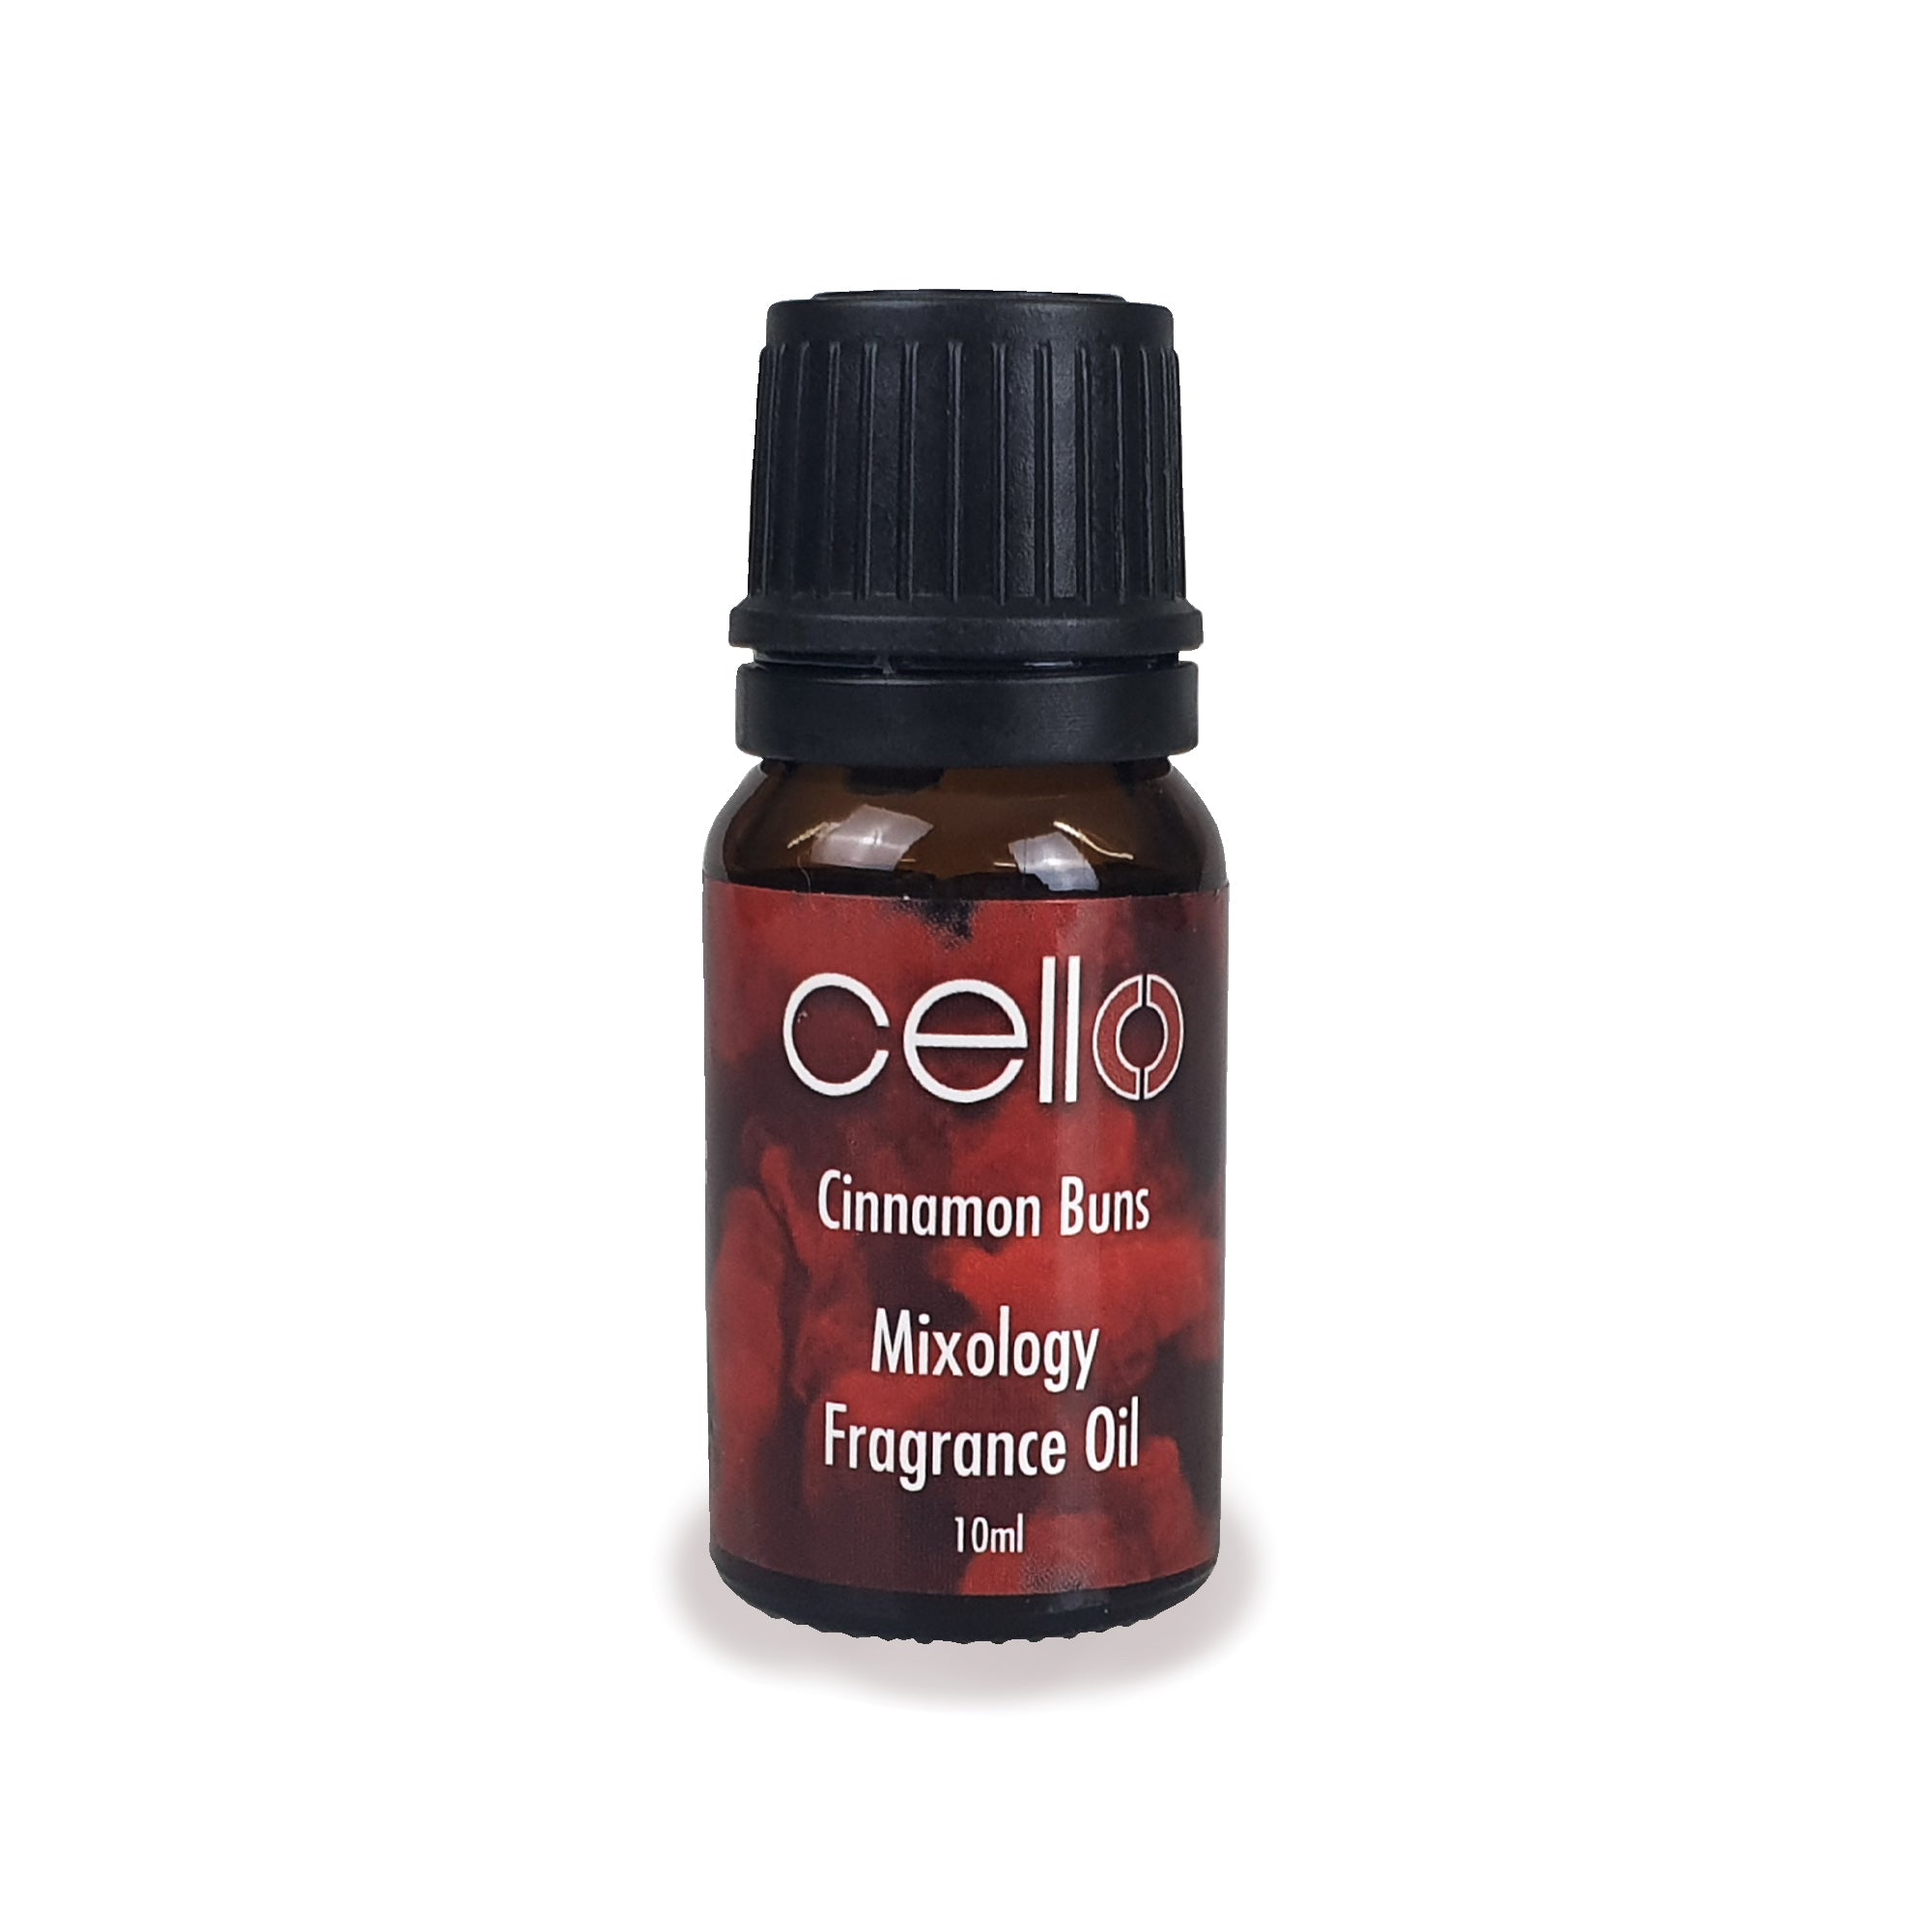 Cello - Mixology Fragrance Oils - Cinnamon Buns